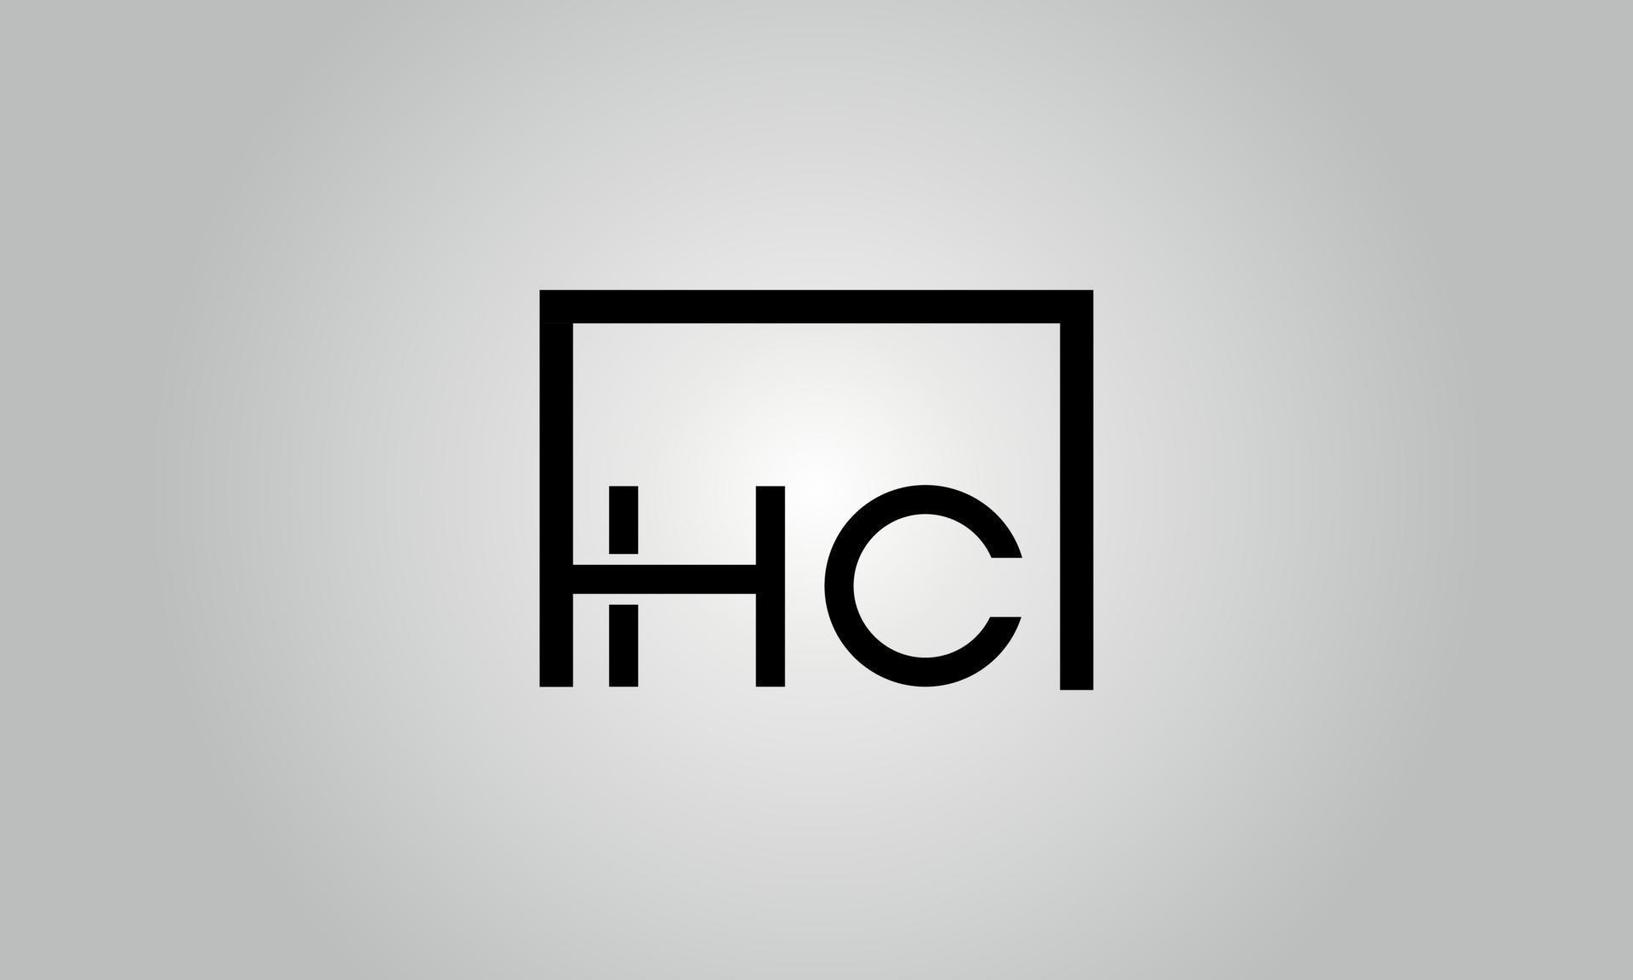 design de logotipo de letra hc. hc logotipo com forma quadrada em cores pretas modelo de vetor livre.